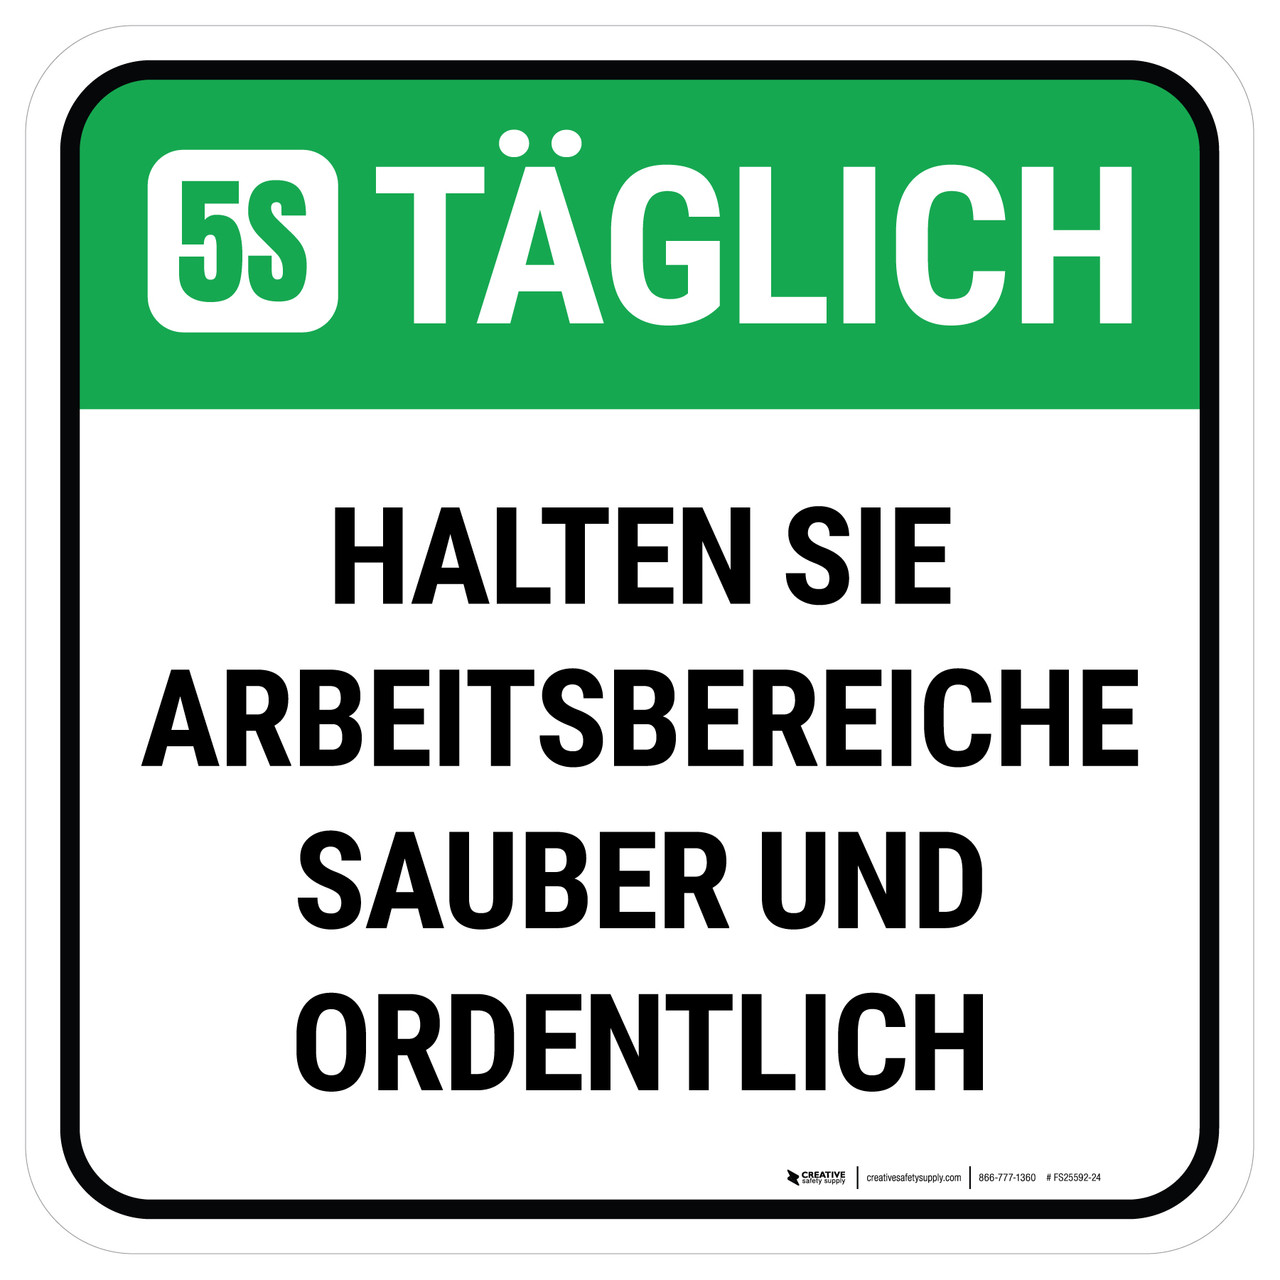 5S Täglich - Halten Sie Arbeitsbereiche sauber und ordentlich (5S Everyday  - Keep Work Areas Clean And Orderly) German - Floor Sign